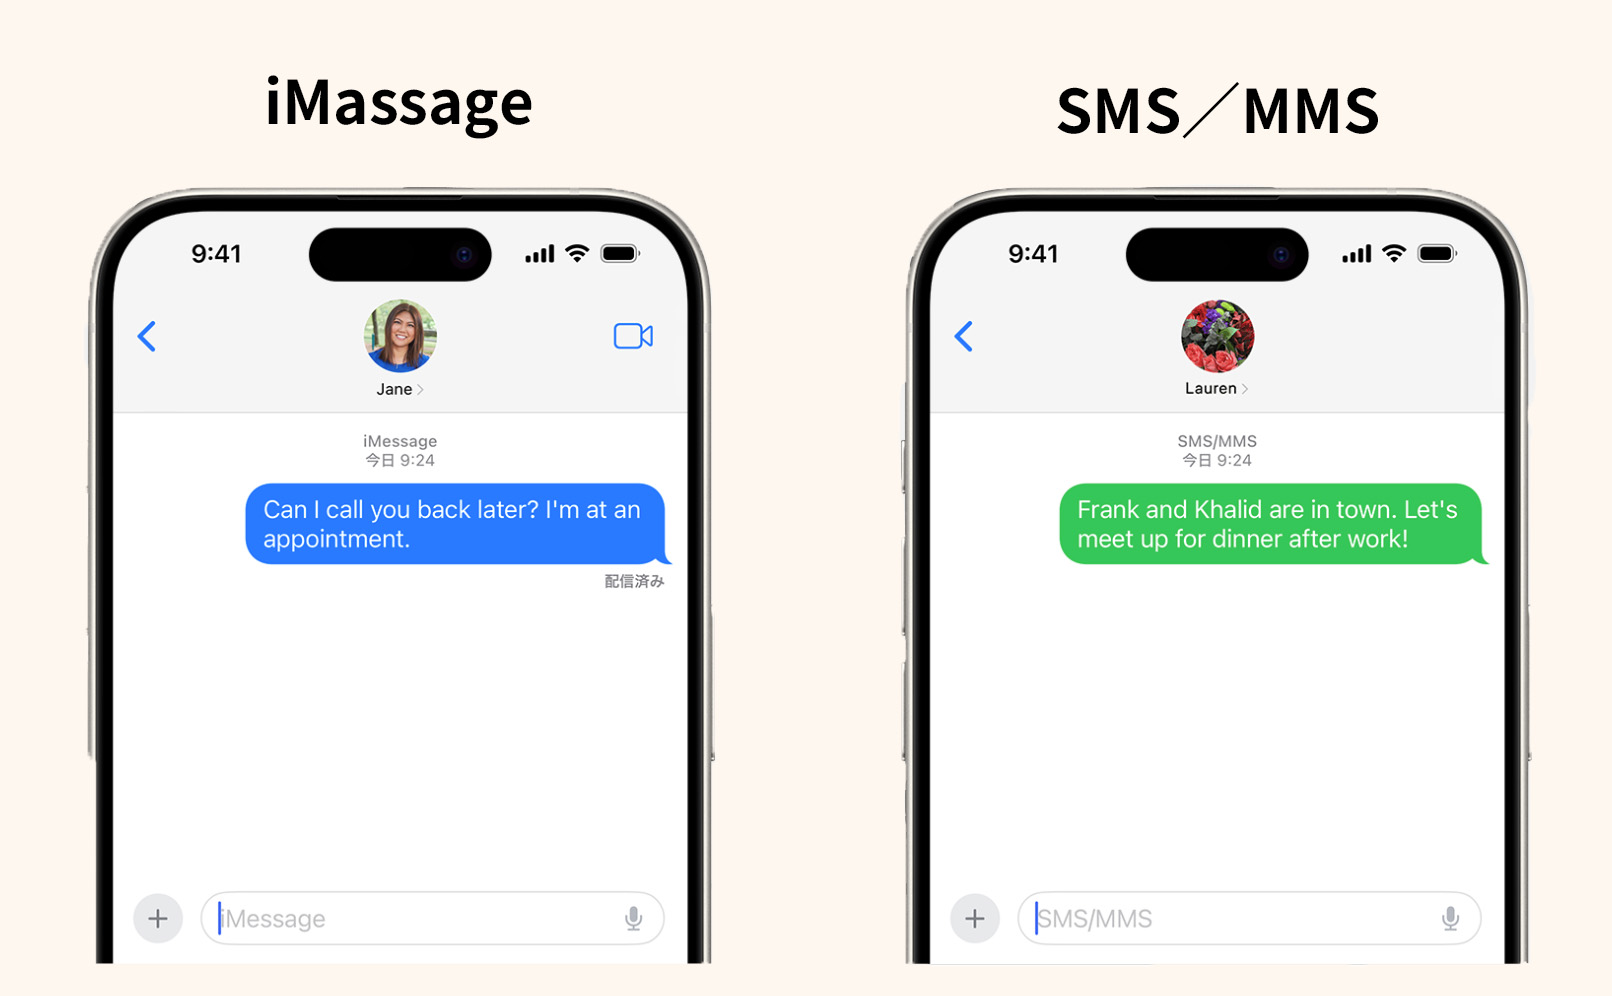 iMessageとSMSをそれぞれ使った時のメッセージアプリの画像。
左：iMessageを使用して送信されたメッセージが表示される青色の吹き出し。
右：SMSを使用して送信されたメッセージが表示される緑色の吹き出し。